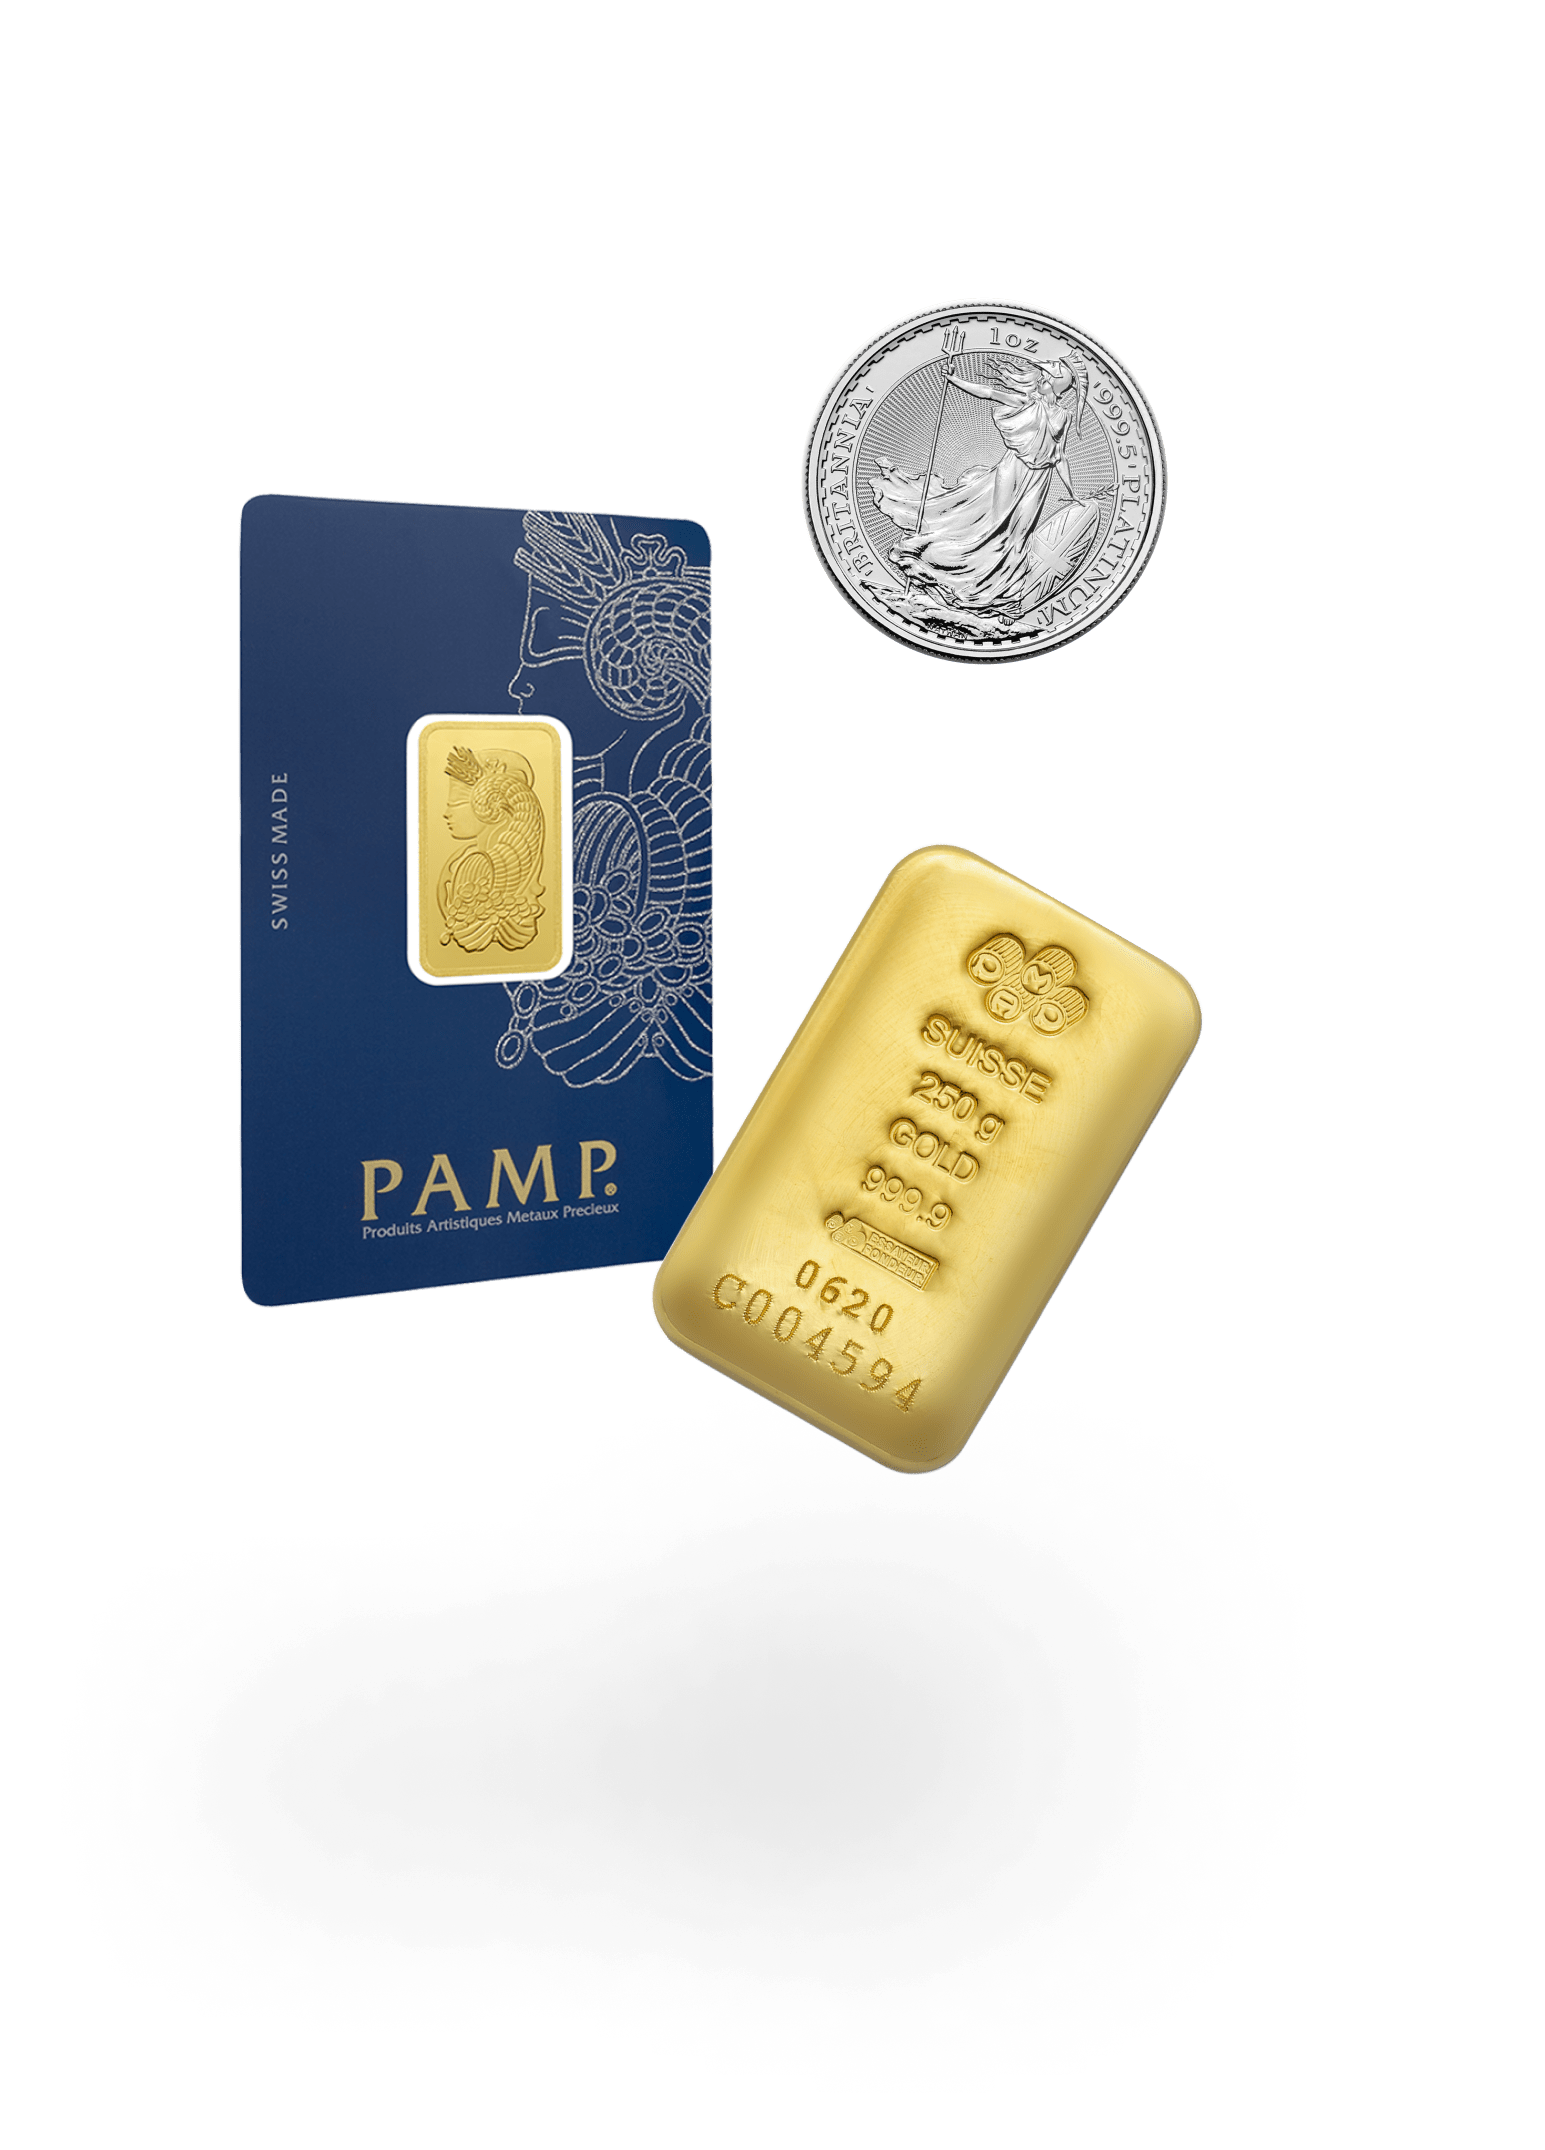 Acquistare lingotti e monete d'oro da PAMP e altre zecche rinomate con l'assistente al risparmio, come un lingotto d'oro da 1 kg, una moneta Britannia da 1 oncia o un lingotto d'oro Lady Fortuna da 5 g